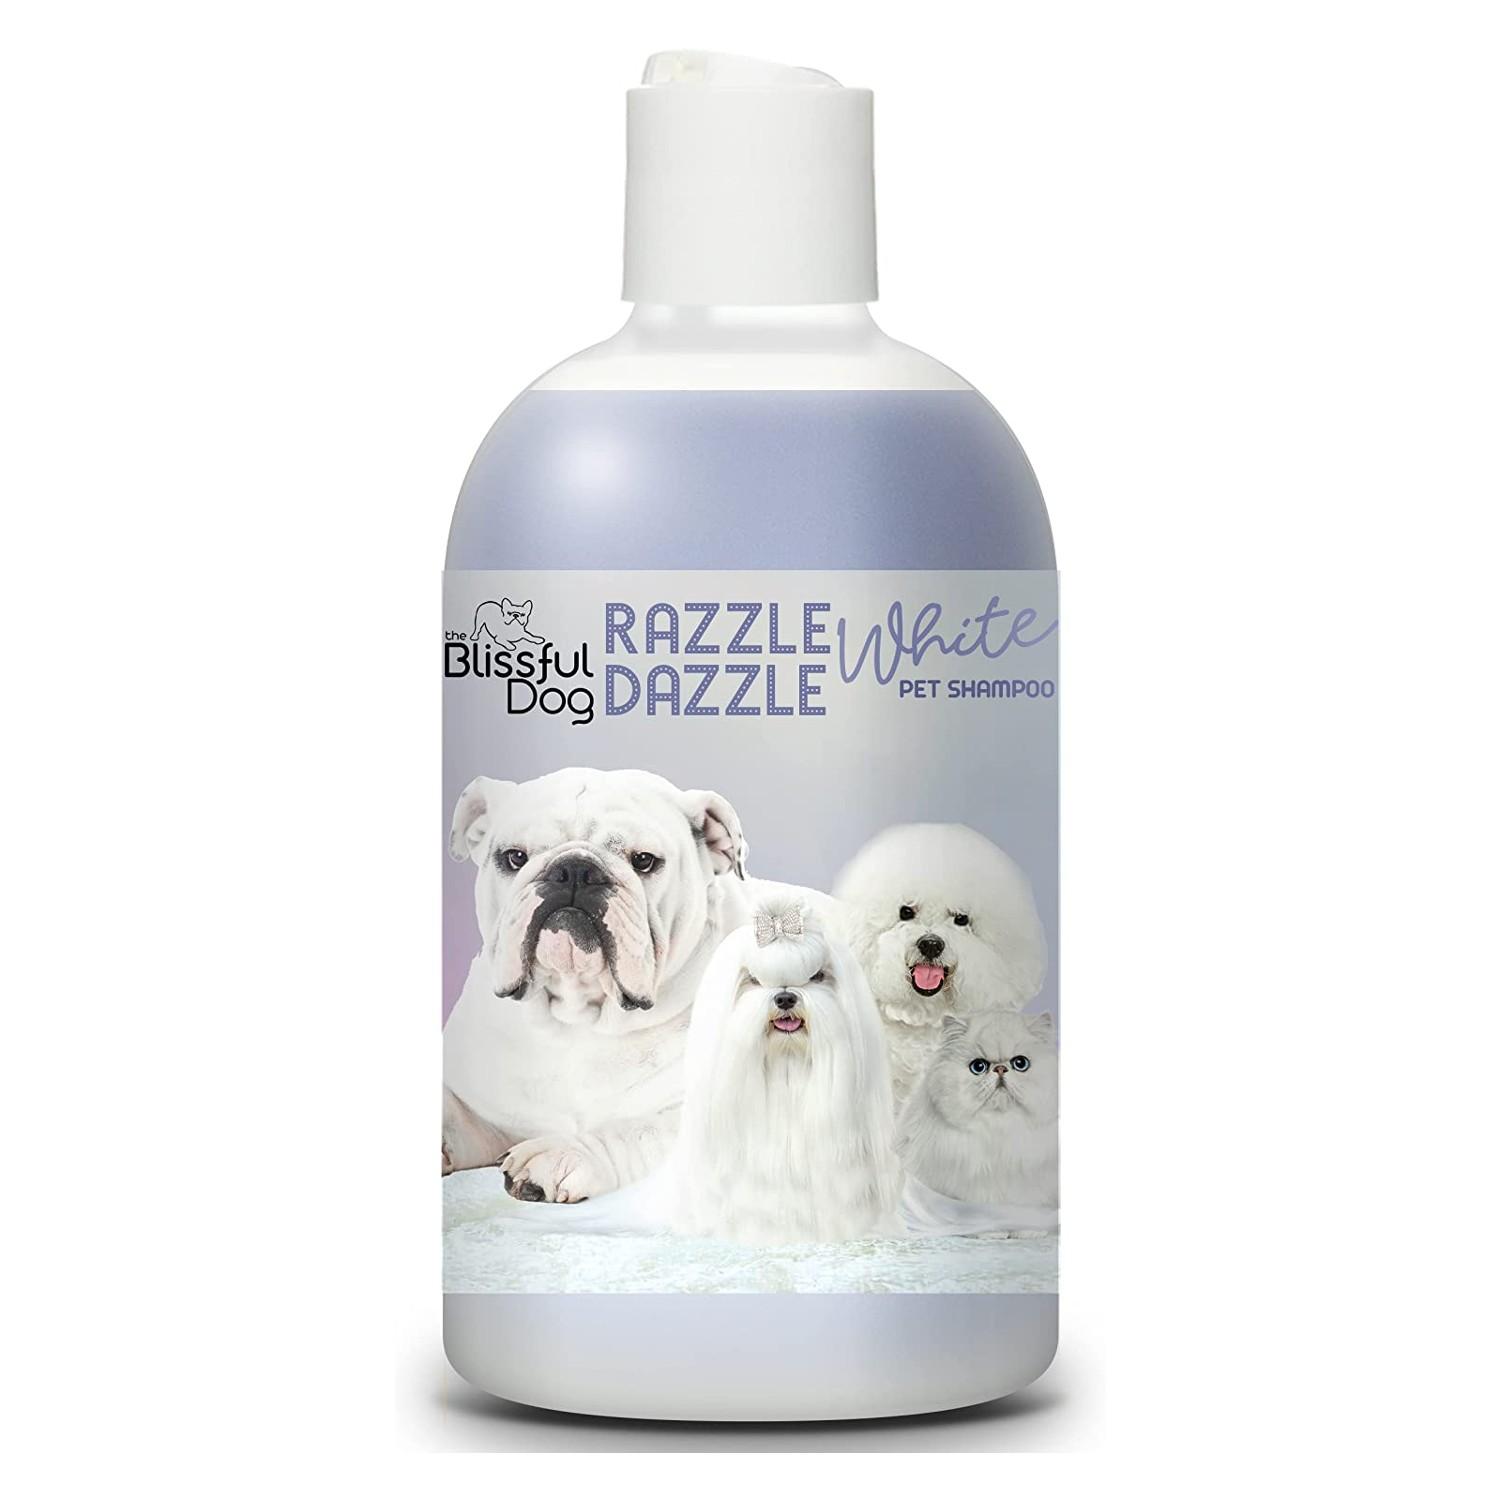 The Blissful Dog Razzle Dazzle White Pet Shampoo